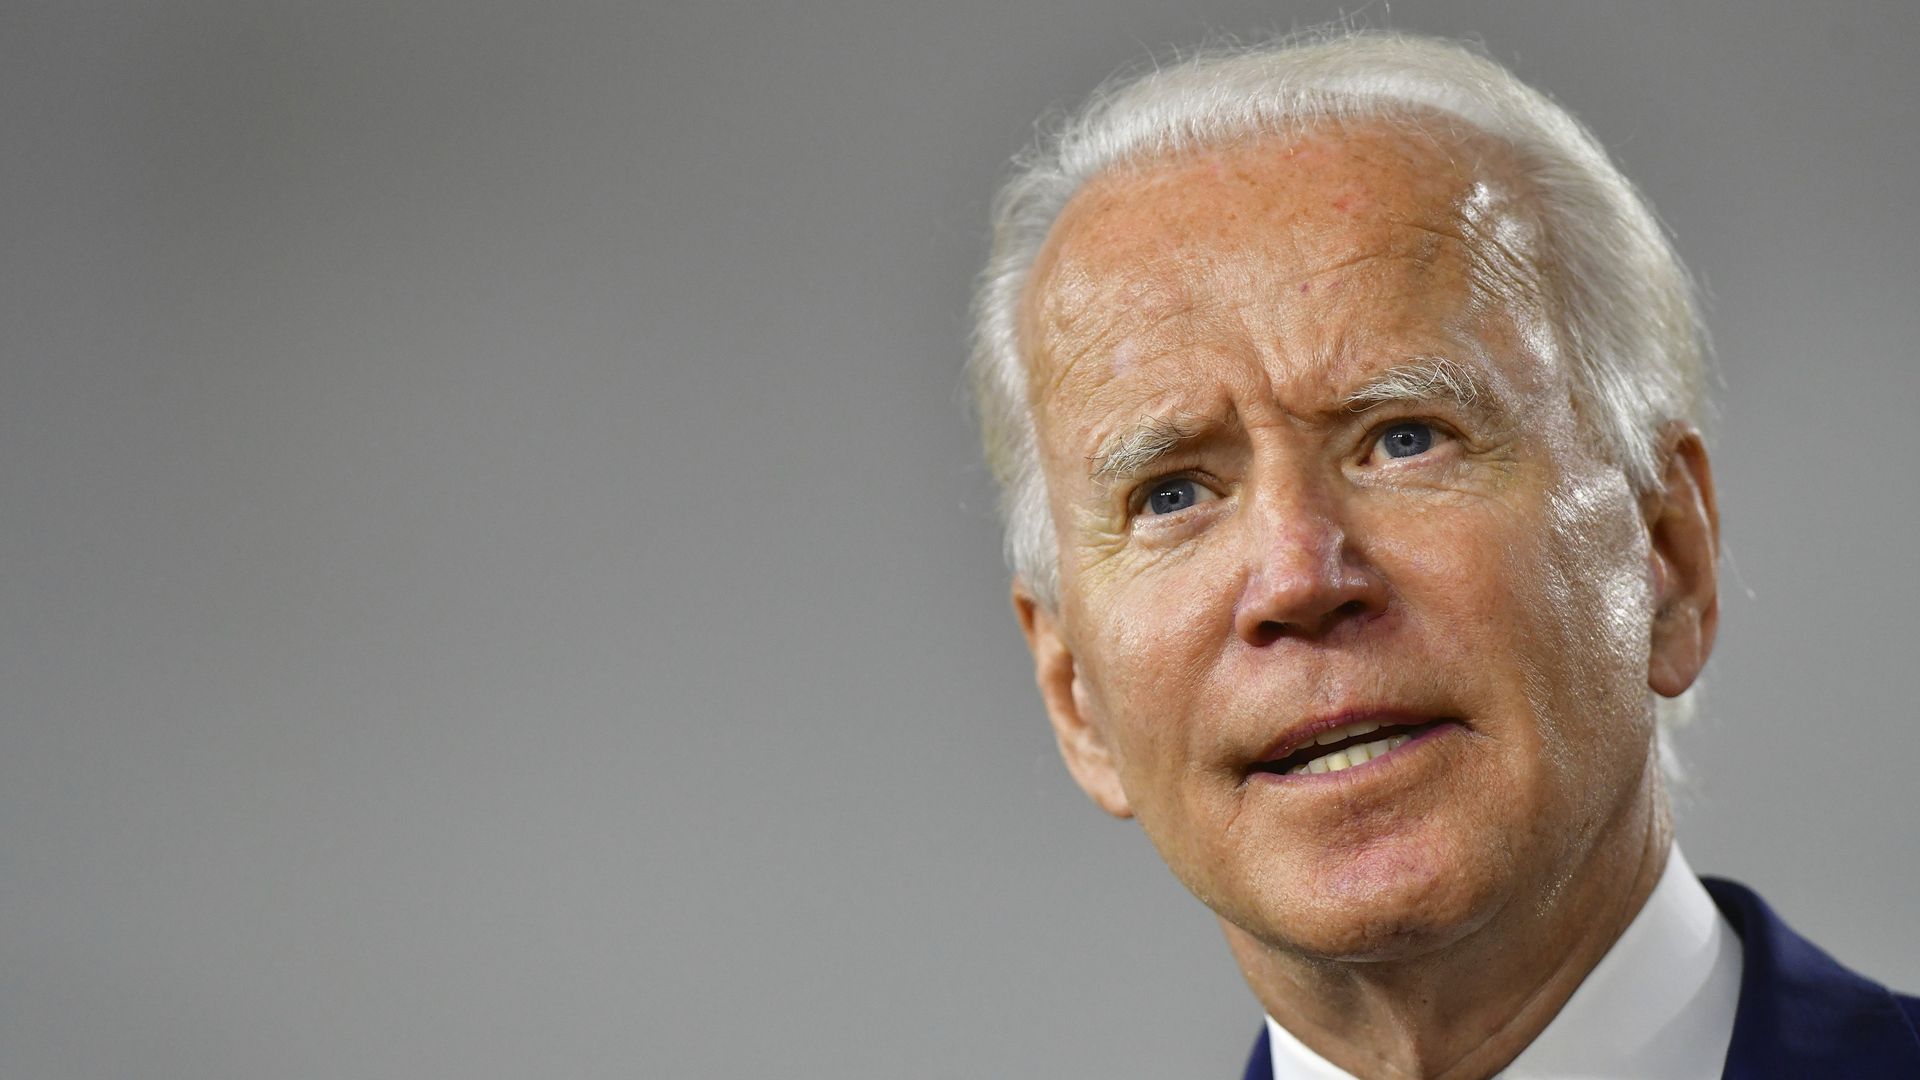 Close-in shot of Joe Biden's face